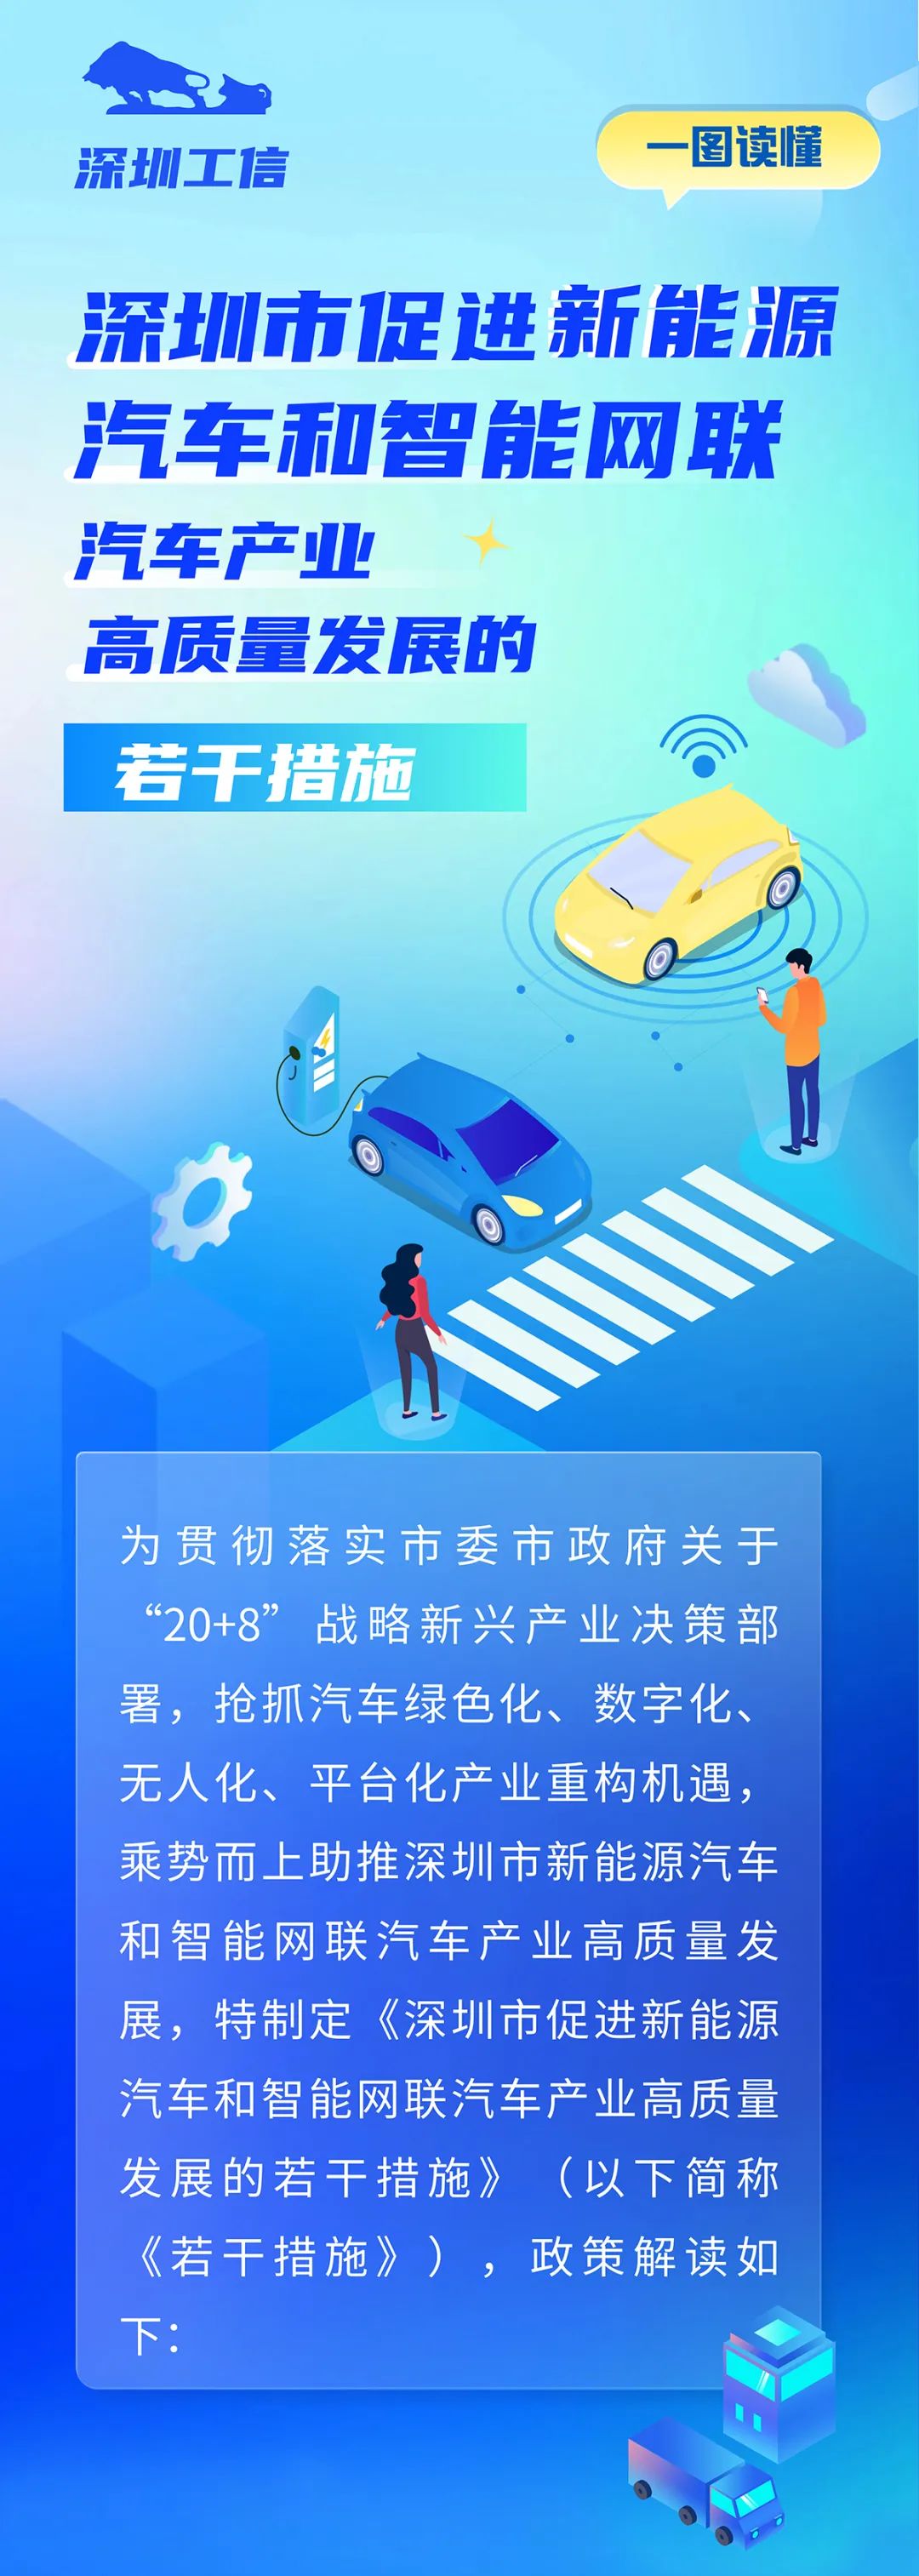 【图片解读】深圳八部门联合发布措施促进新能源汽车产业高质量发展